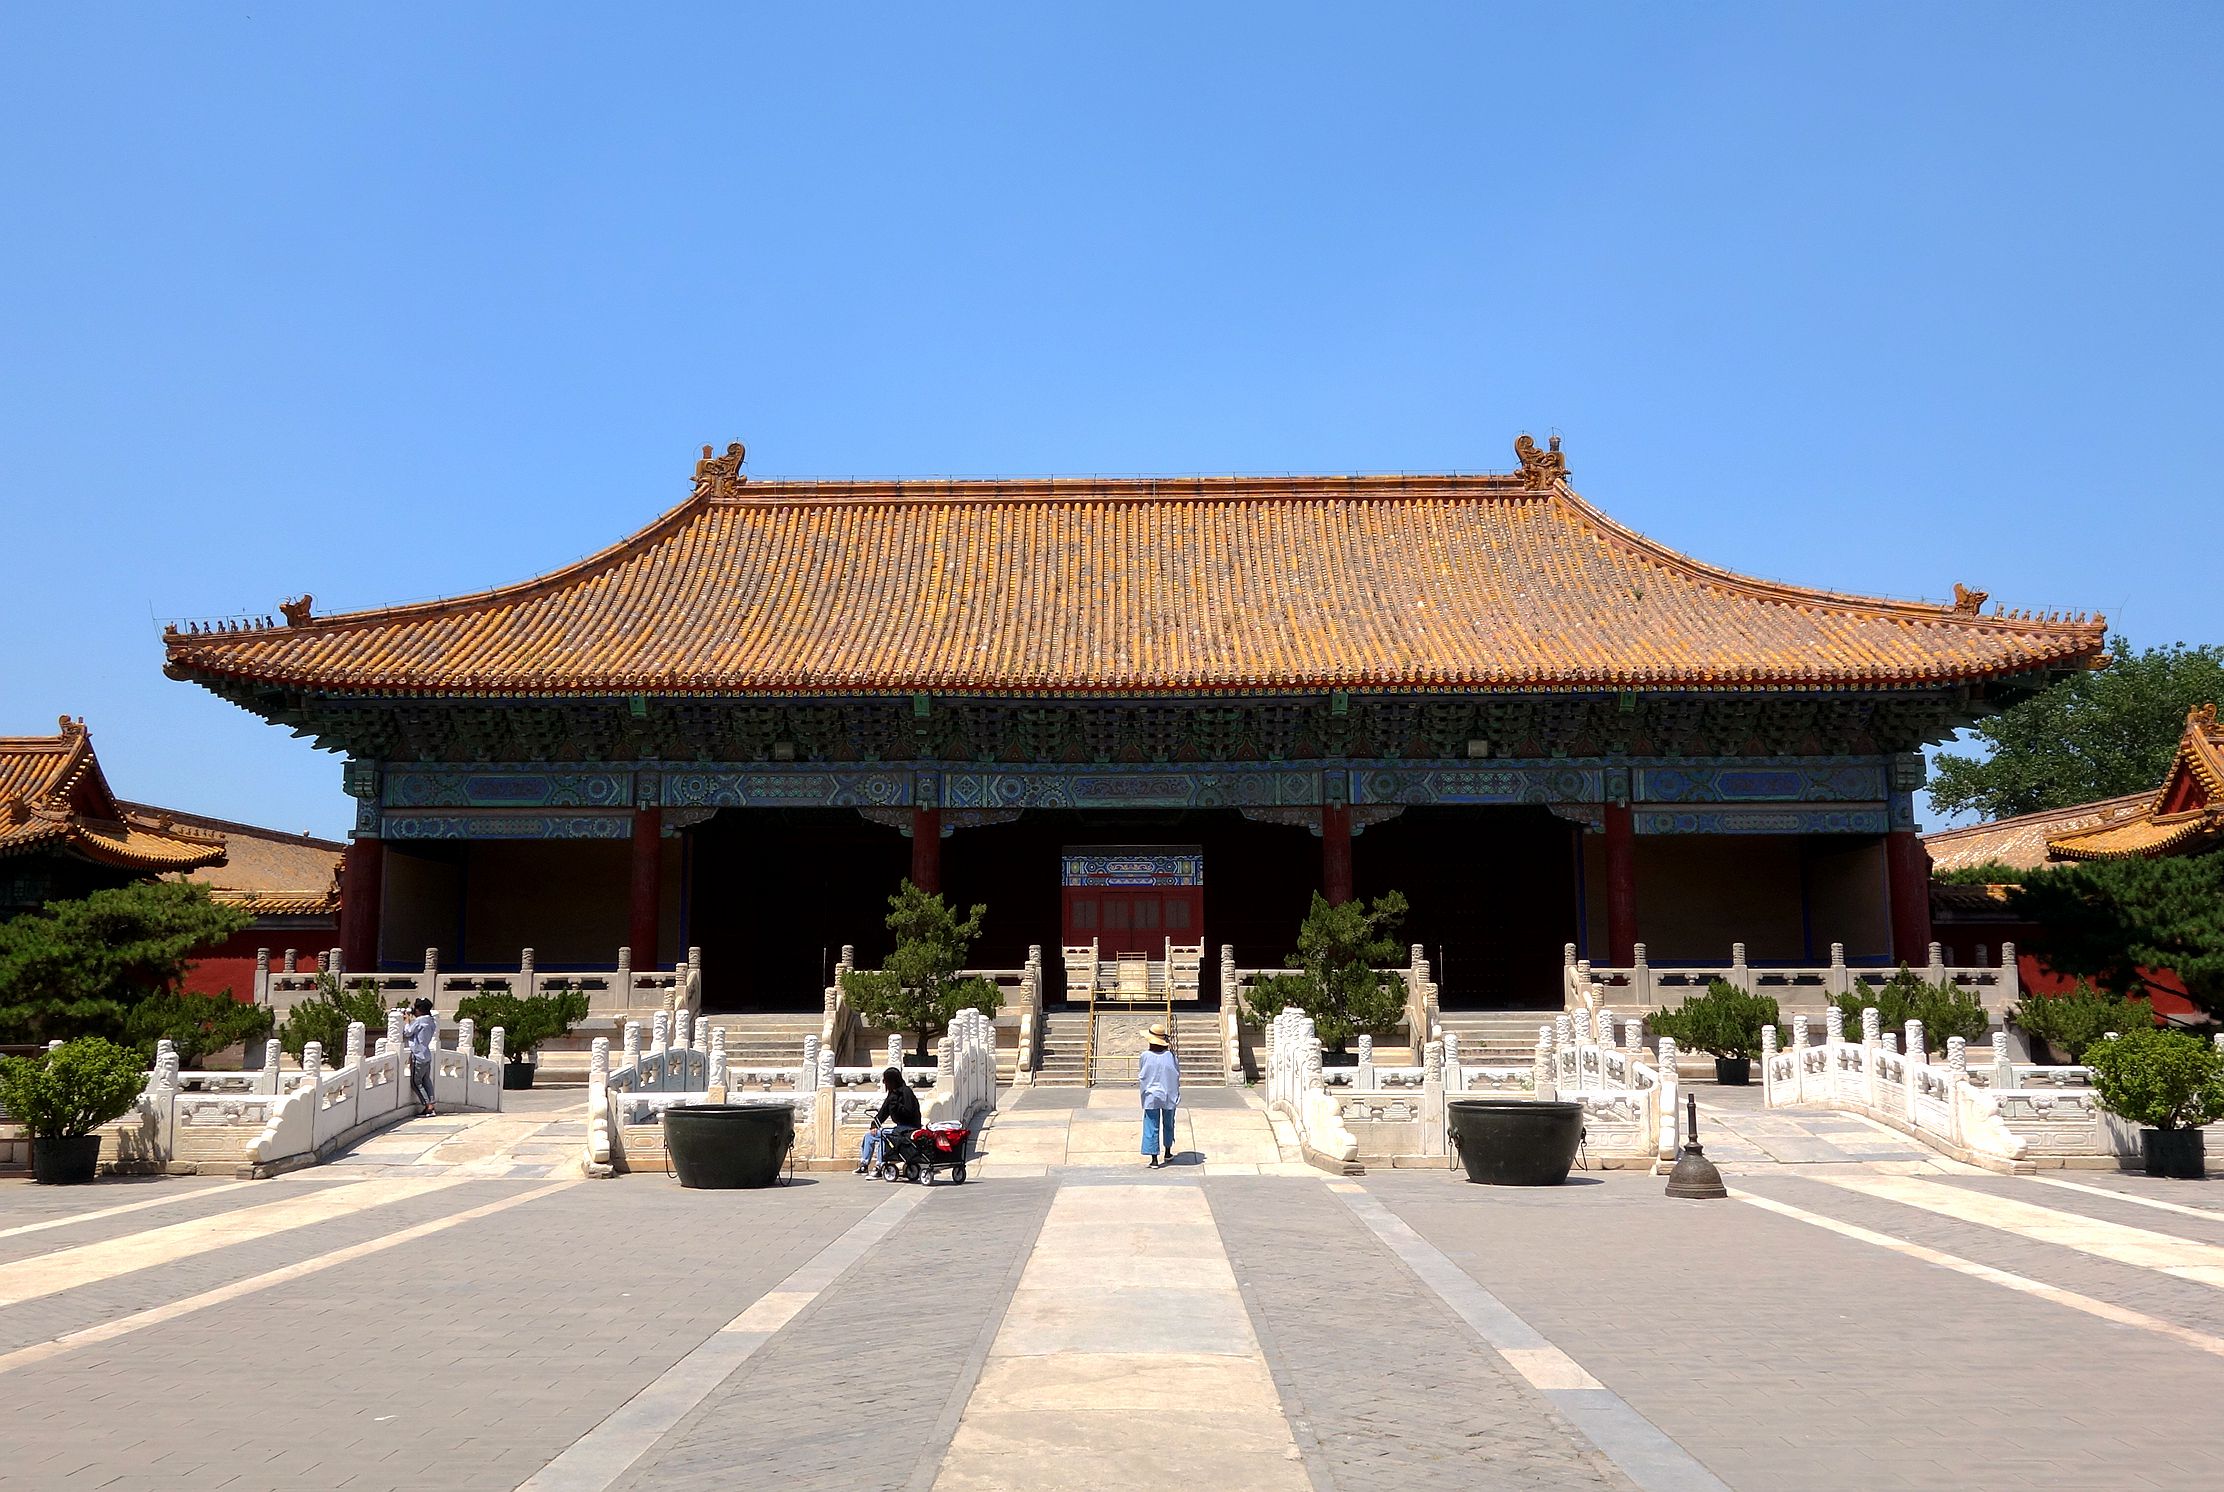 北京故宫东侧的太庙15元门票比2元的能多看点啥